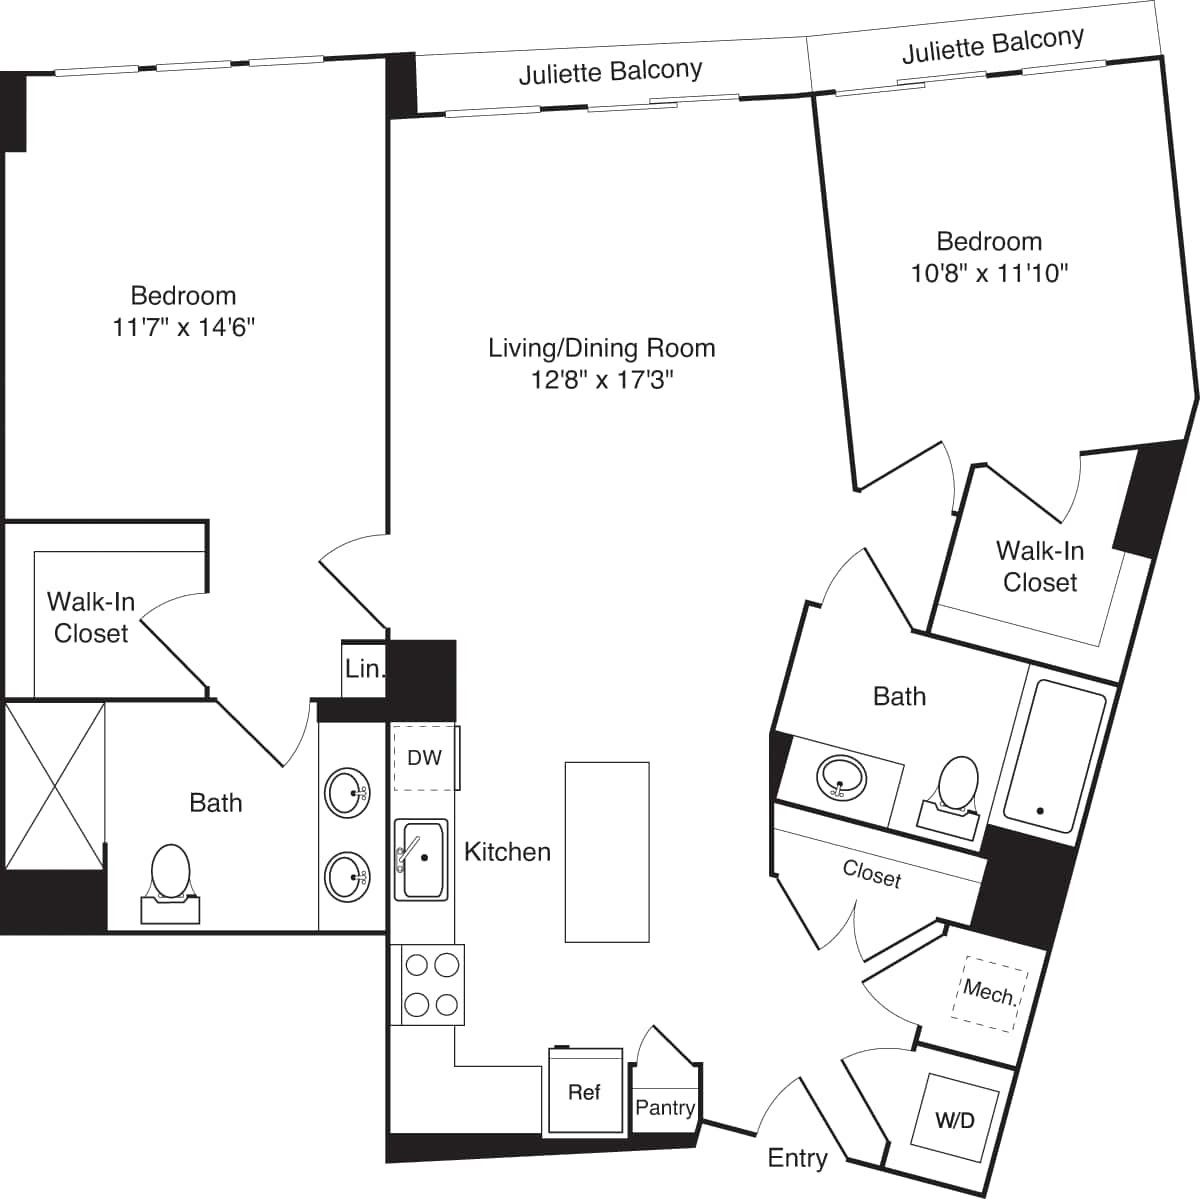 Floorplan diagram for C02-1, showing 2 bedroom